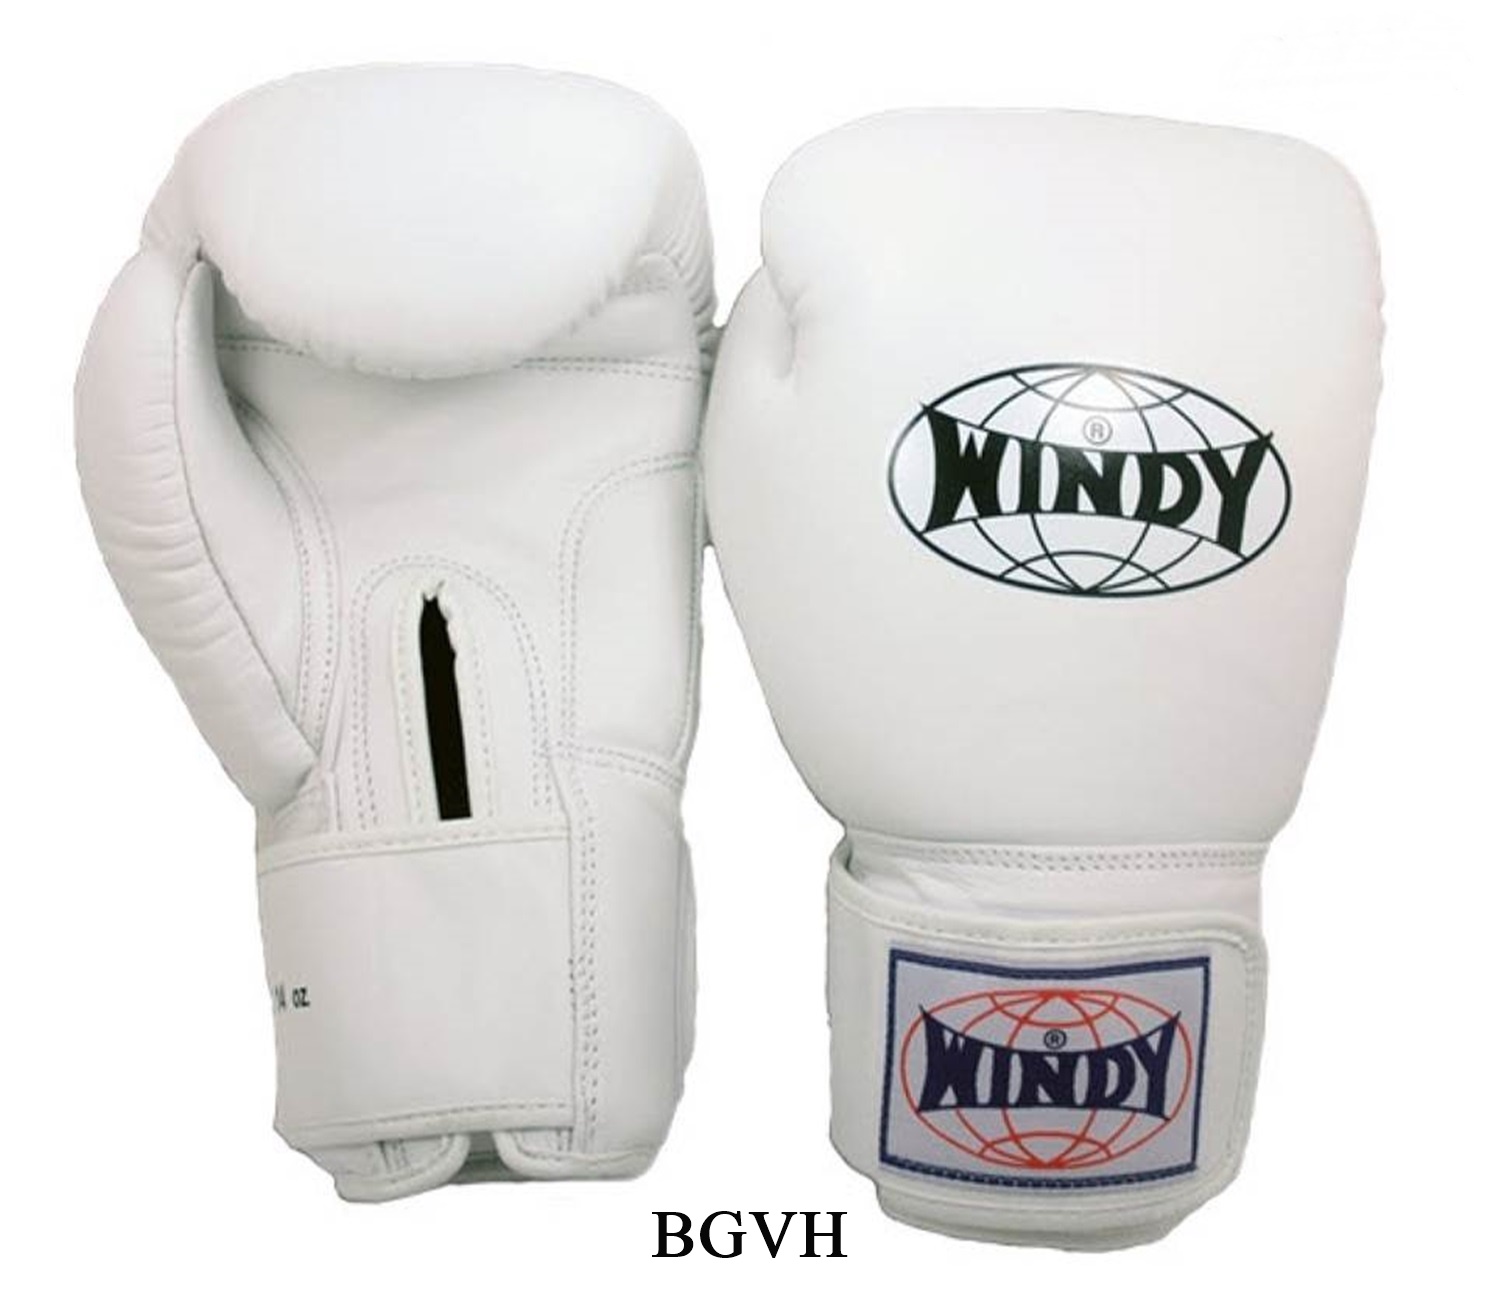 นวมซ้อมมวยไทย วินดี้สปอร์ต ทำจากหนังแท้ เมจิกเทป สีขาว Windy Boxing Gloves (8,10,12,14,16 oz)  White Genuine Leather Sparring MuayThai MMA K1